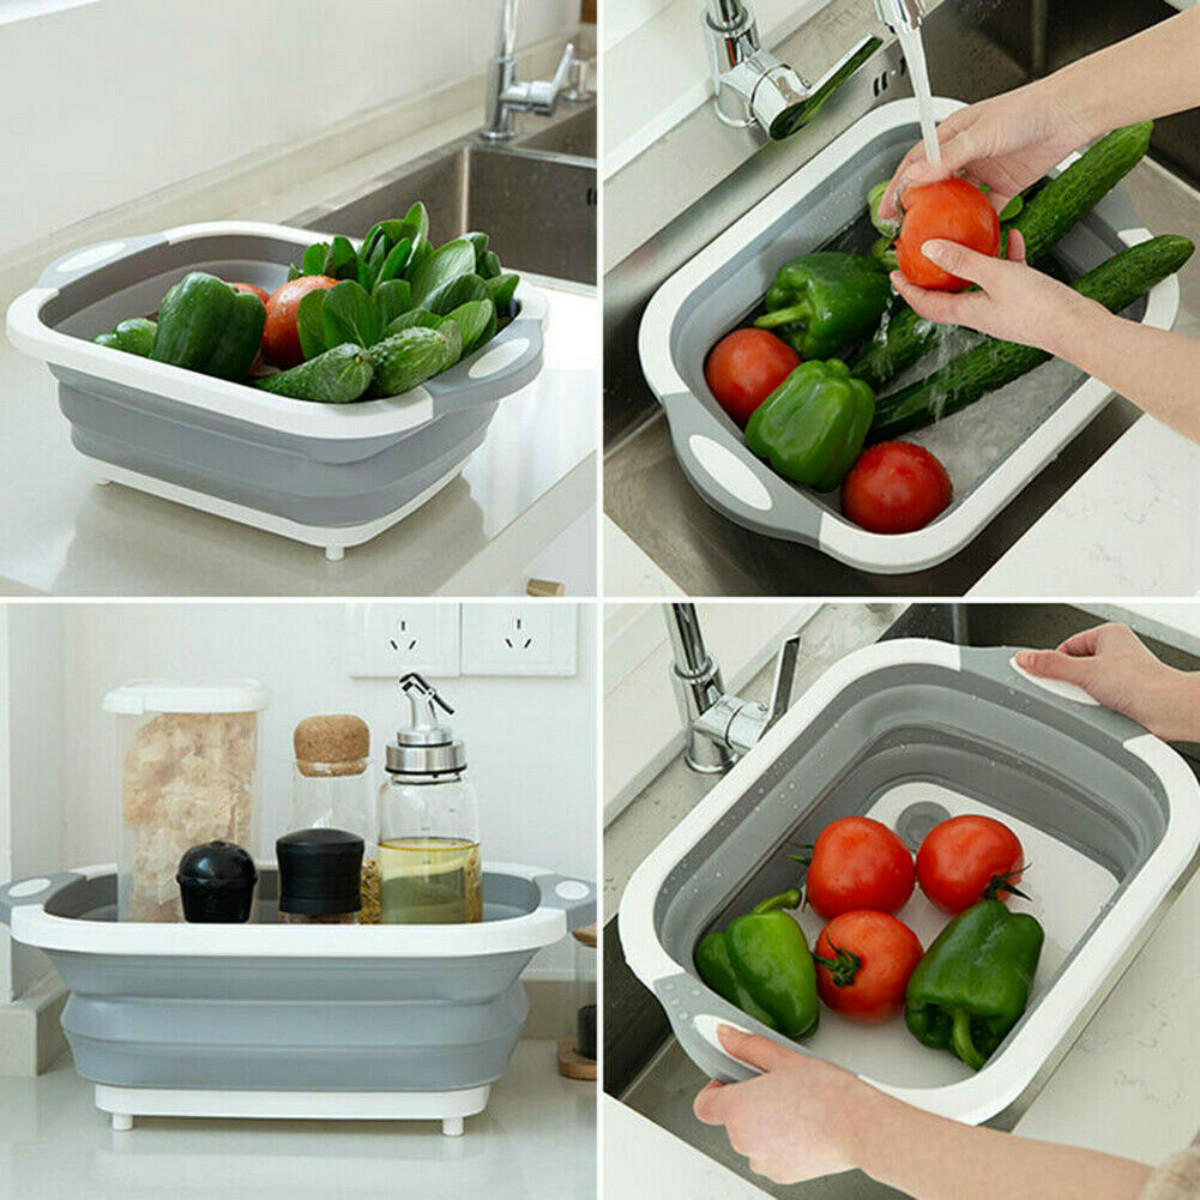 4-in-1-Foldable-Multifunctional-Board-Tool-Fruit-Vegetables-Sink-Drain-Storage-Basket-1523907-7